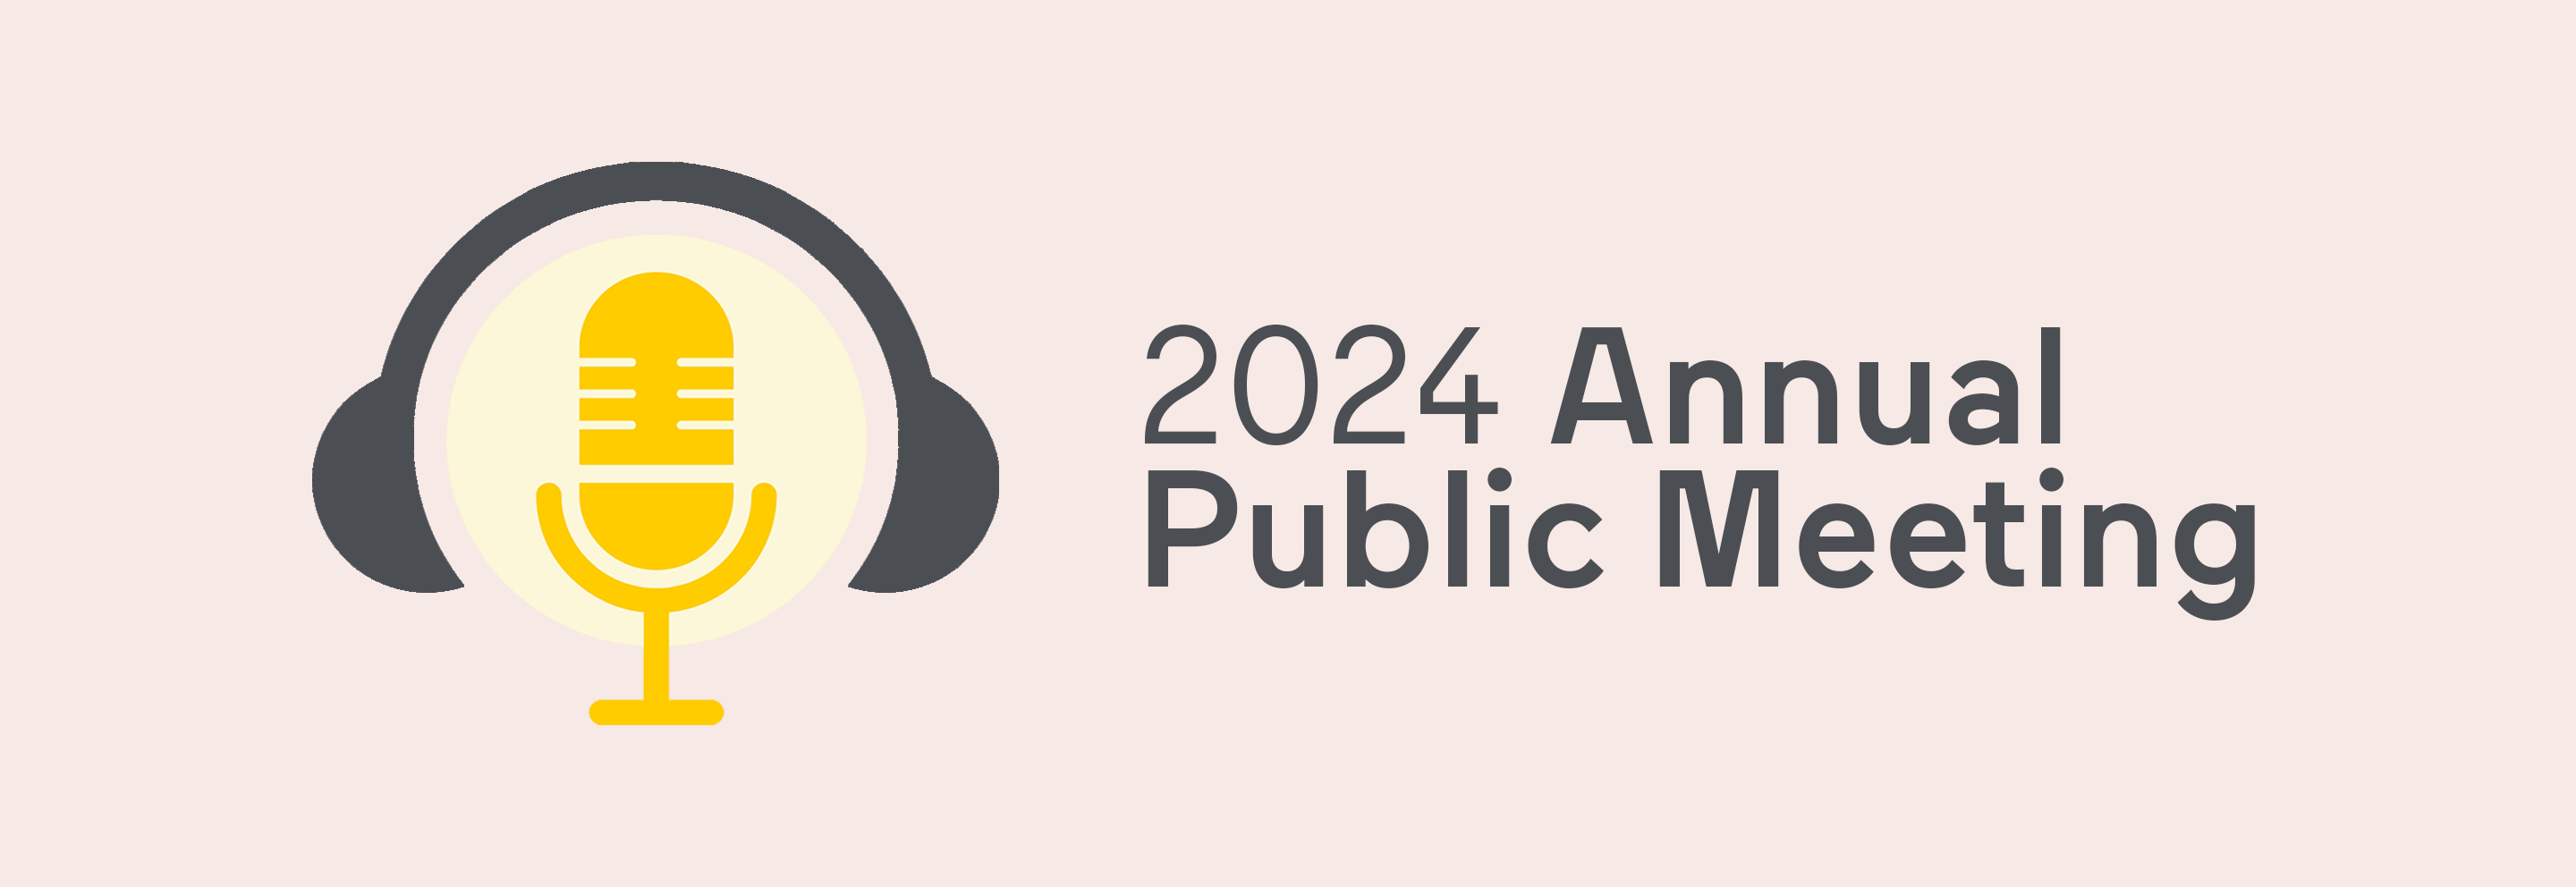 VIA Rail Annual Public Meeting 2024